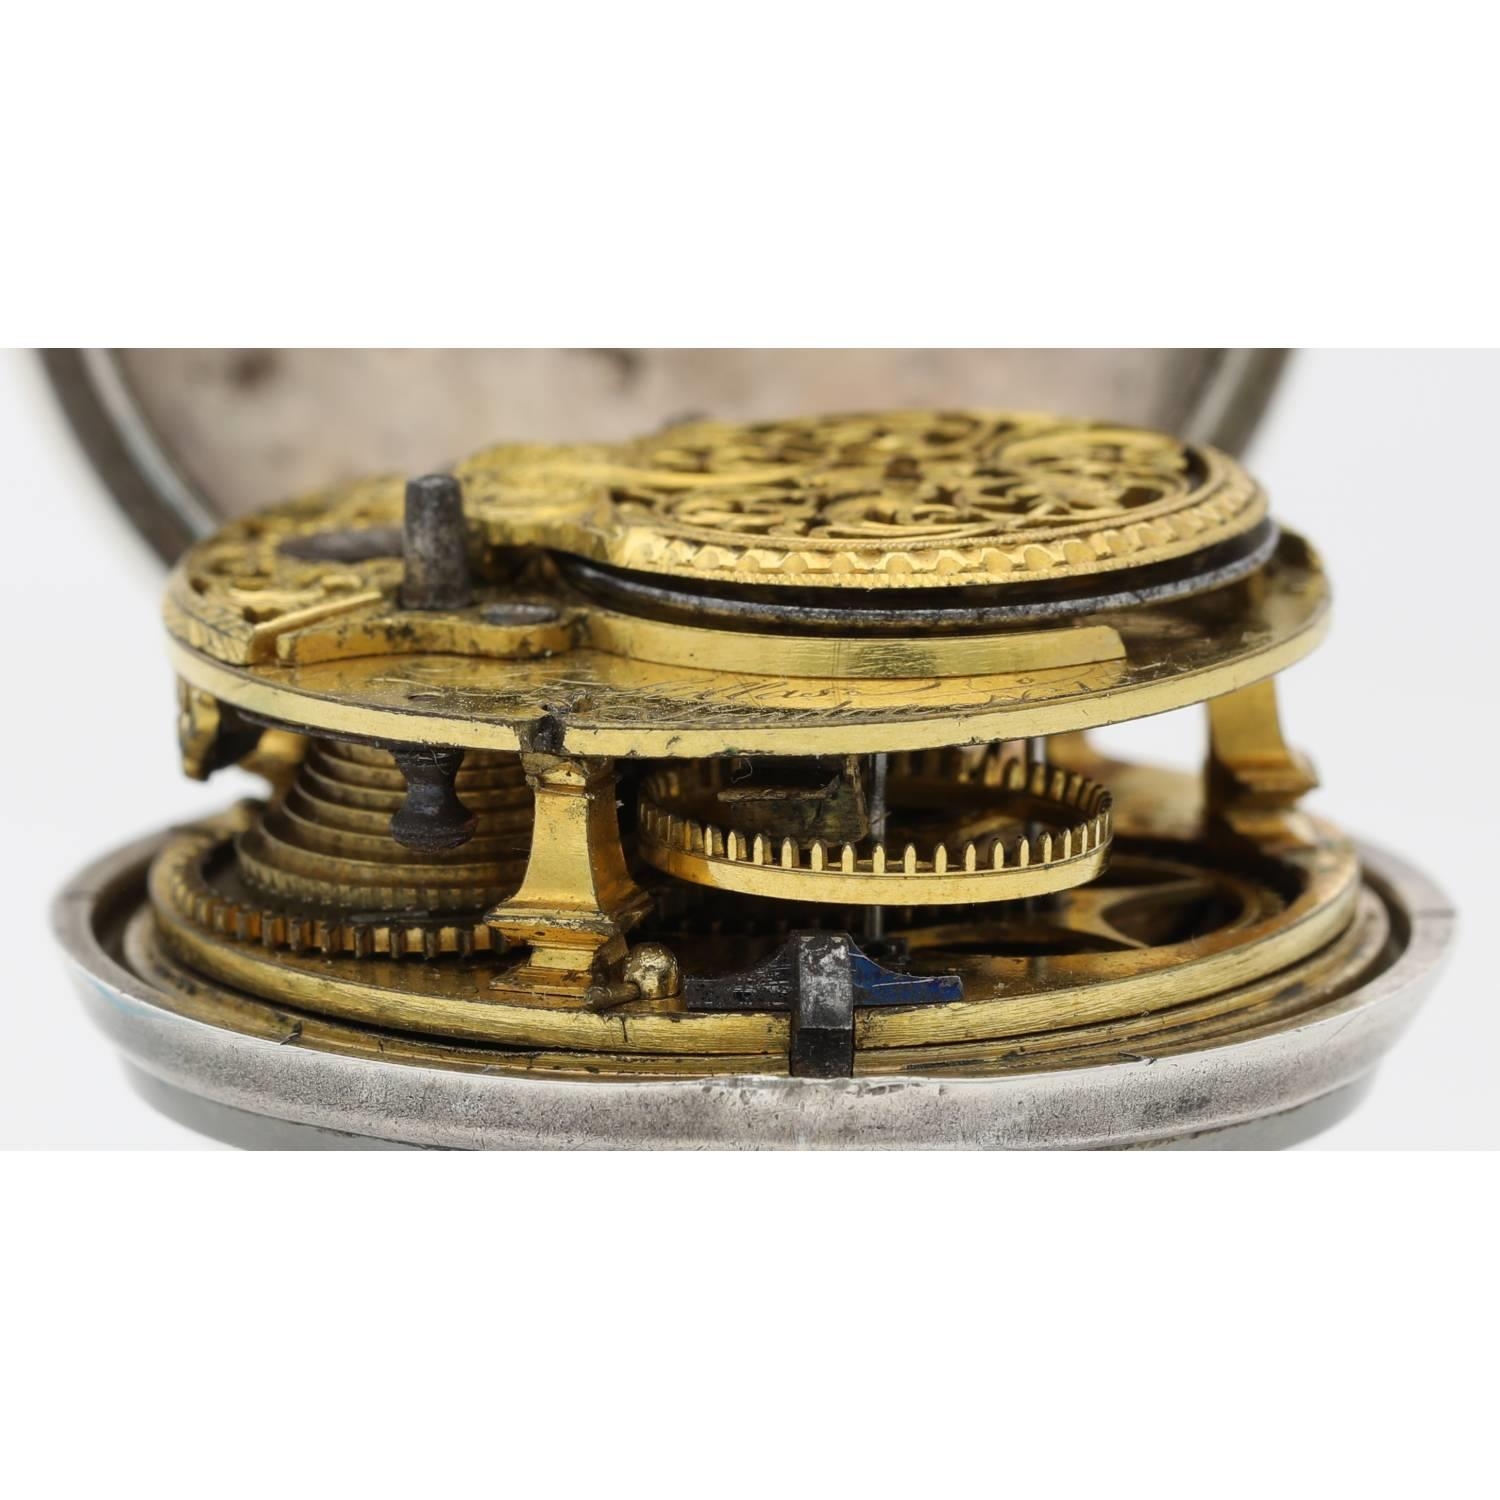 Jno. Stillas, London - English 18th century silver pair cased verge pocket watch, London 1771, - Bild 6 aus 10